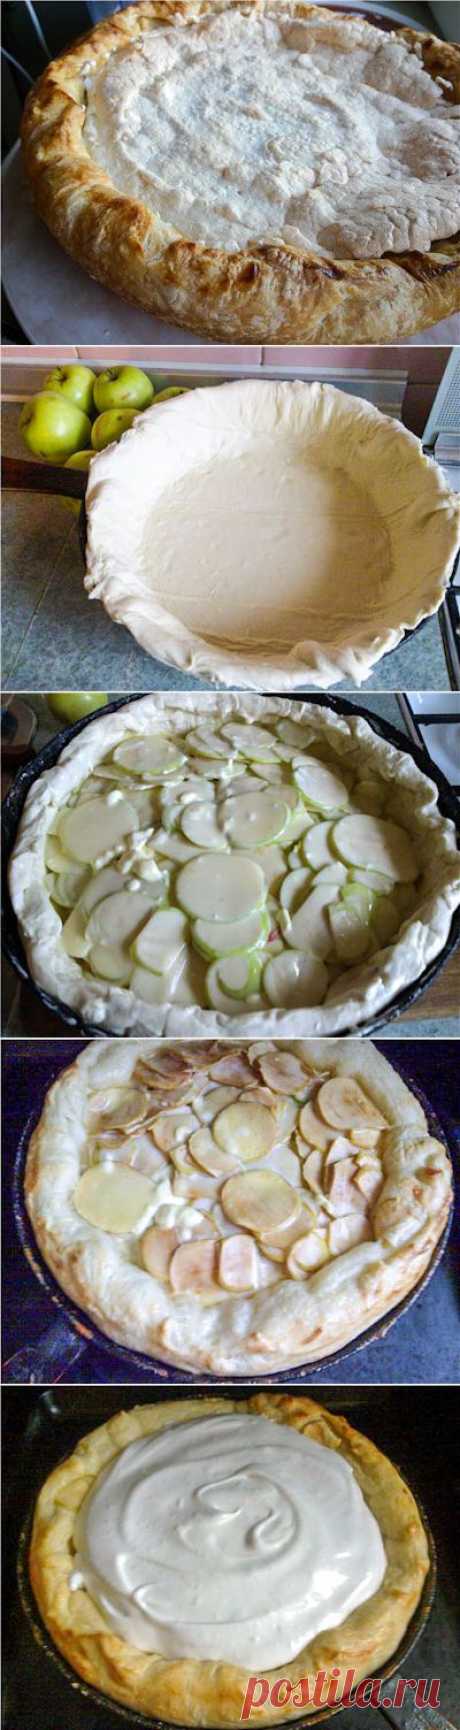 Дутый яблочный пирог. Фото-рецепт / Готовим.РУ